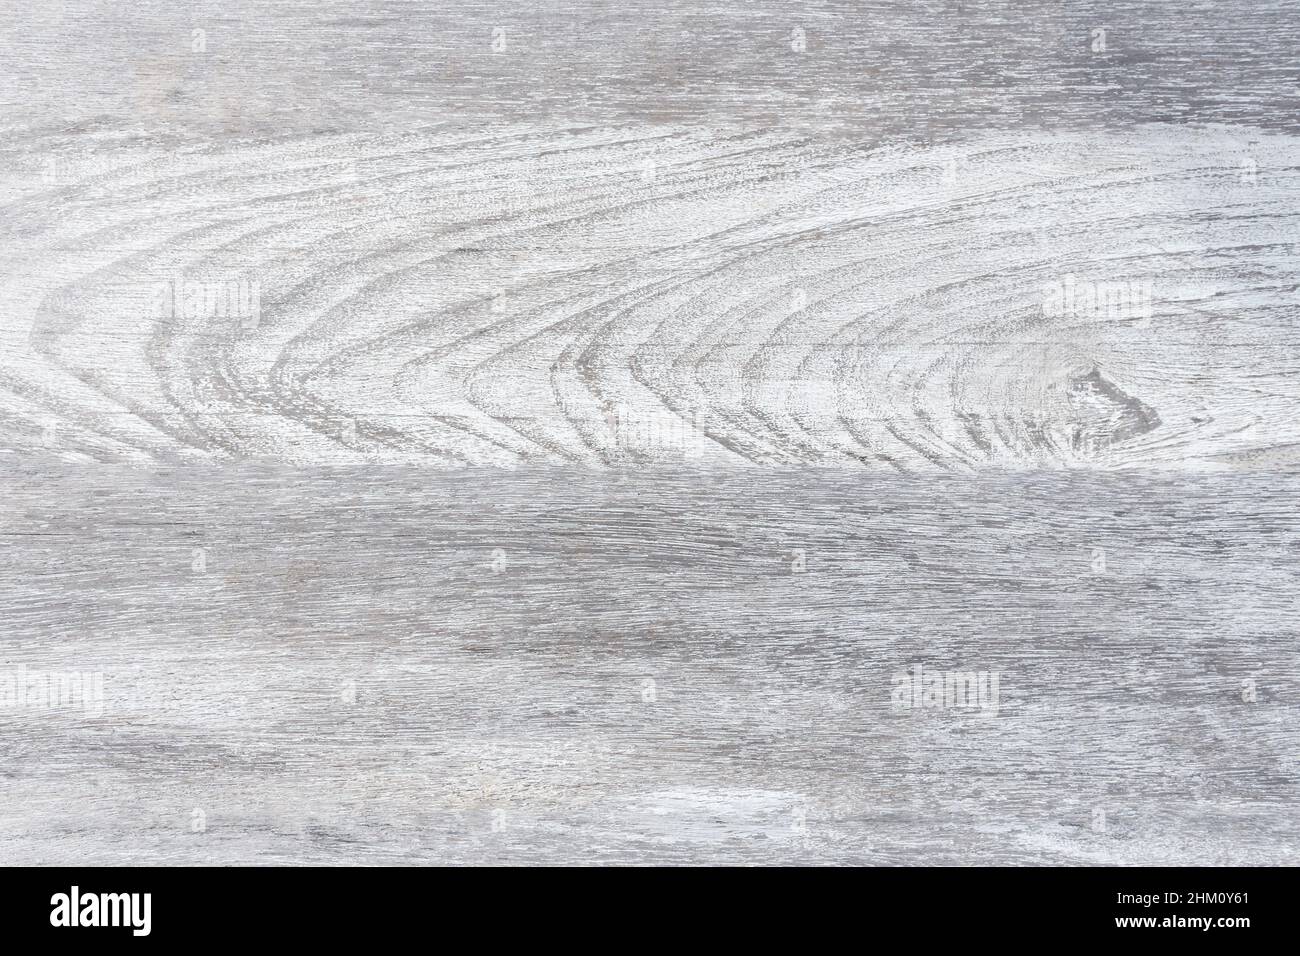 Weiße Korn Luxus Home Tisch Holz oben oben Ansicht Konzept sauber Tischplatte Formica Schreibtisch, Zähler Hintergrund Textur, rustikal schlichten Seitenverkleidungs Marmor bacgr Stockfoto